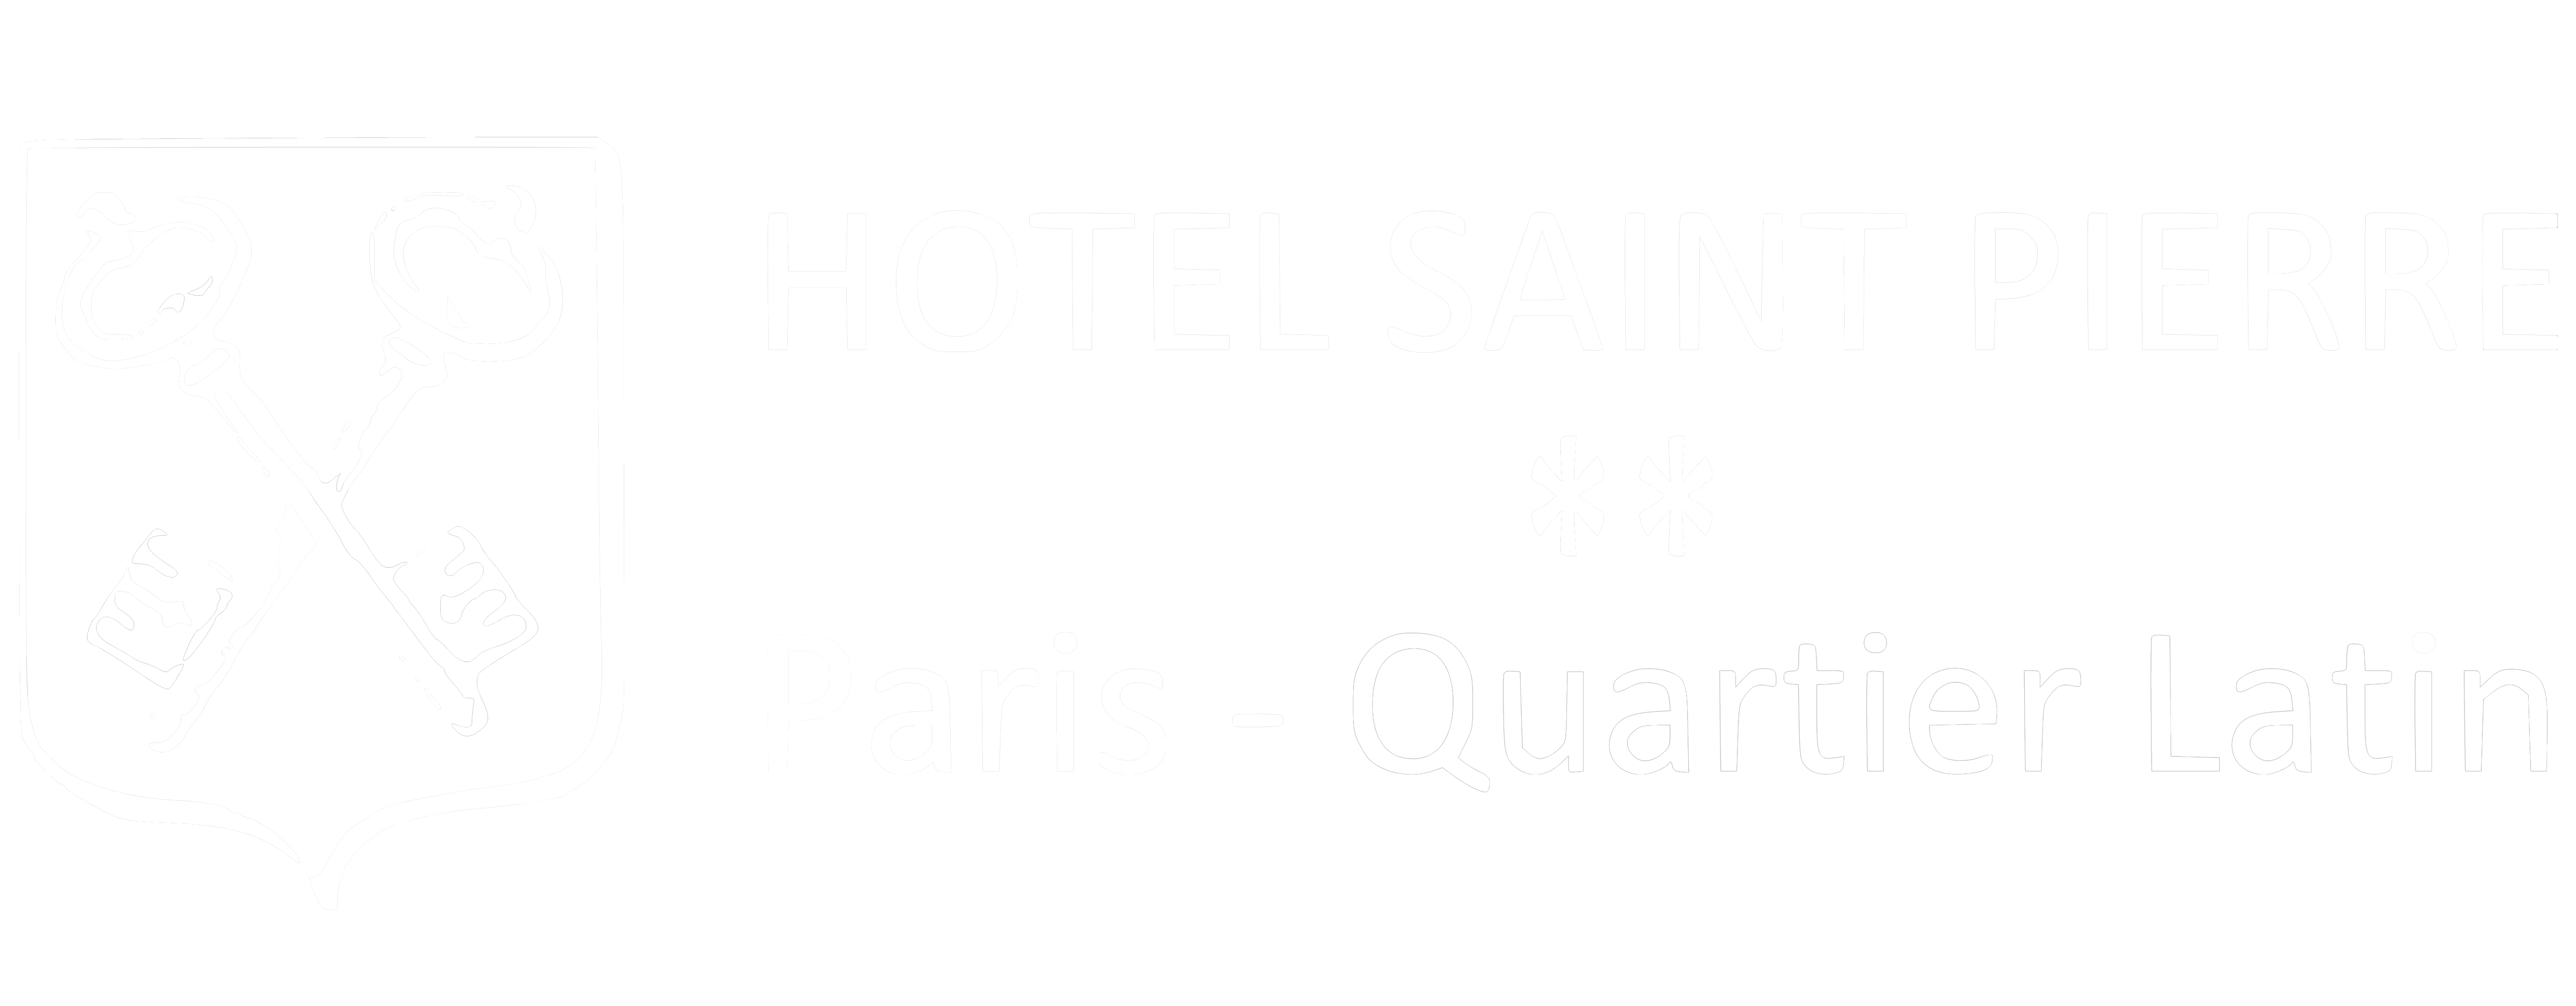 Hôtel Saint-Pierre - Accueil